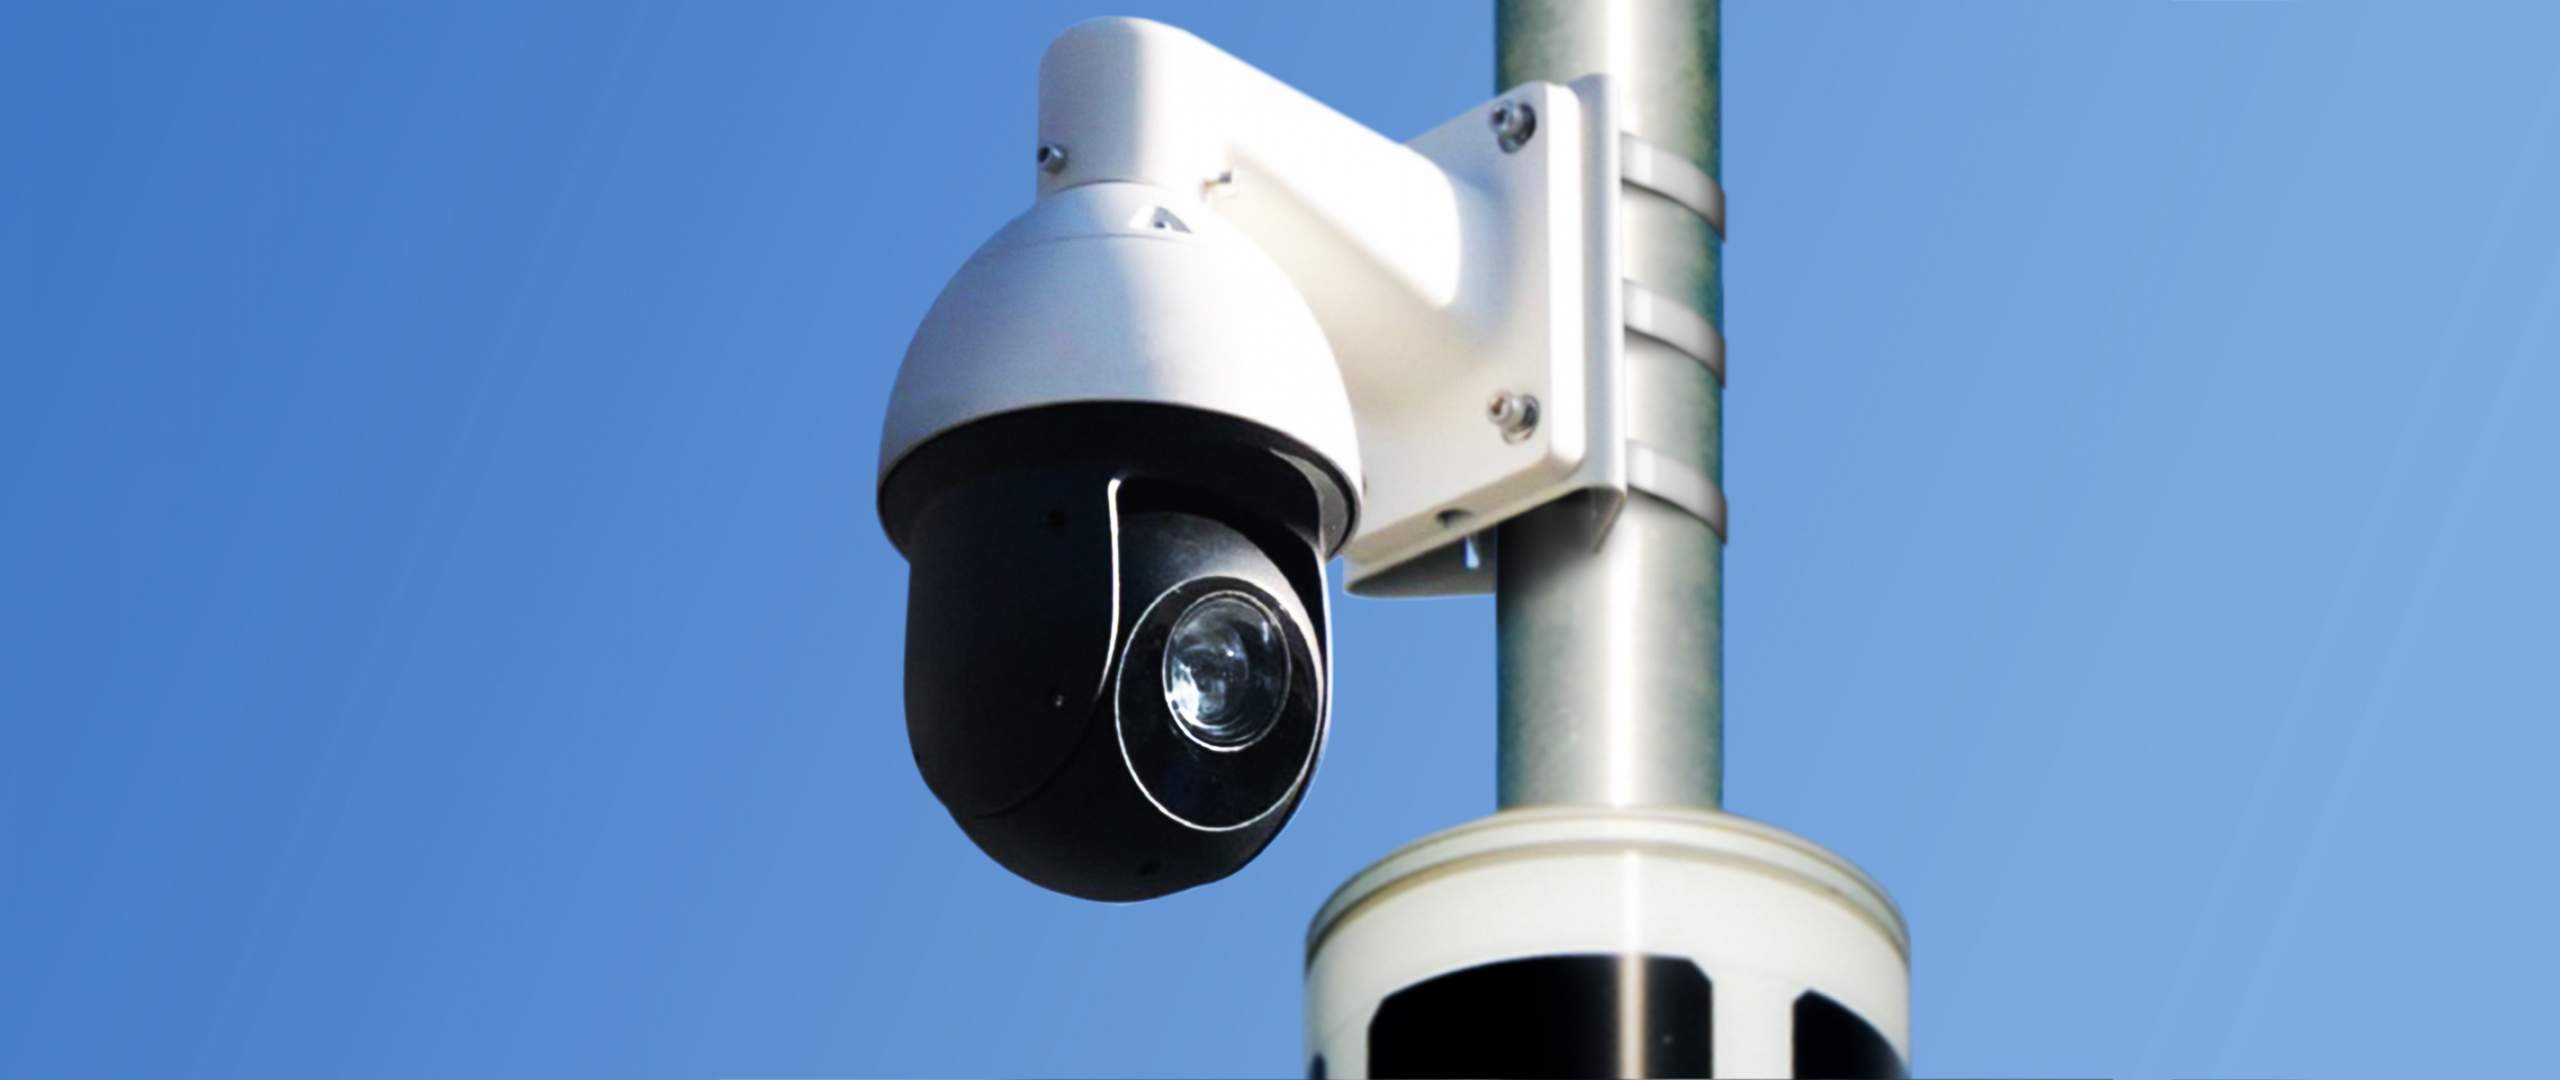 Soluxio solarbetriebener Mast mit CCTV Überwachungskamera